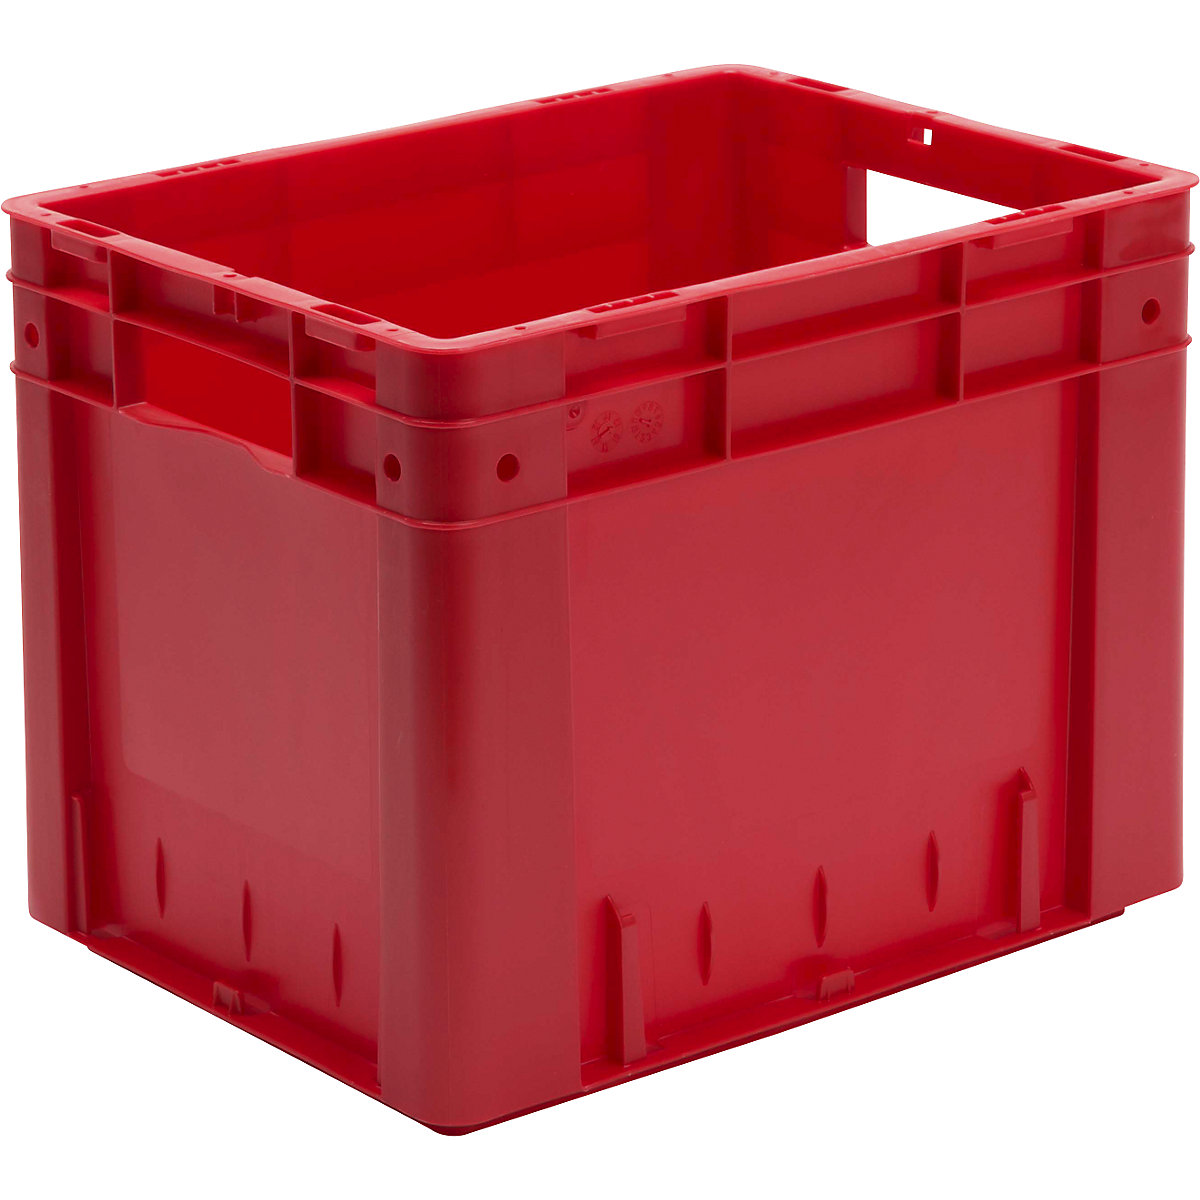 Spremnik za slaganje u EURO formatu, volumen 29 l, ŠxVxD 400 x 300 x 320 mm, pak. 4 kom., u crvenoj boji-5